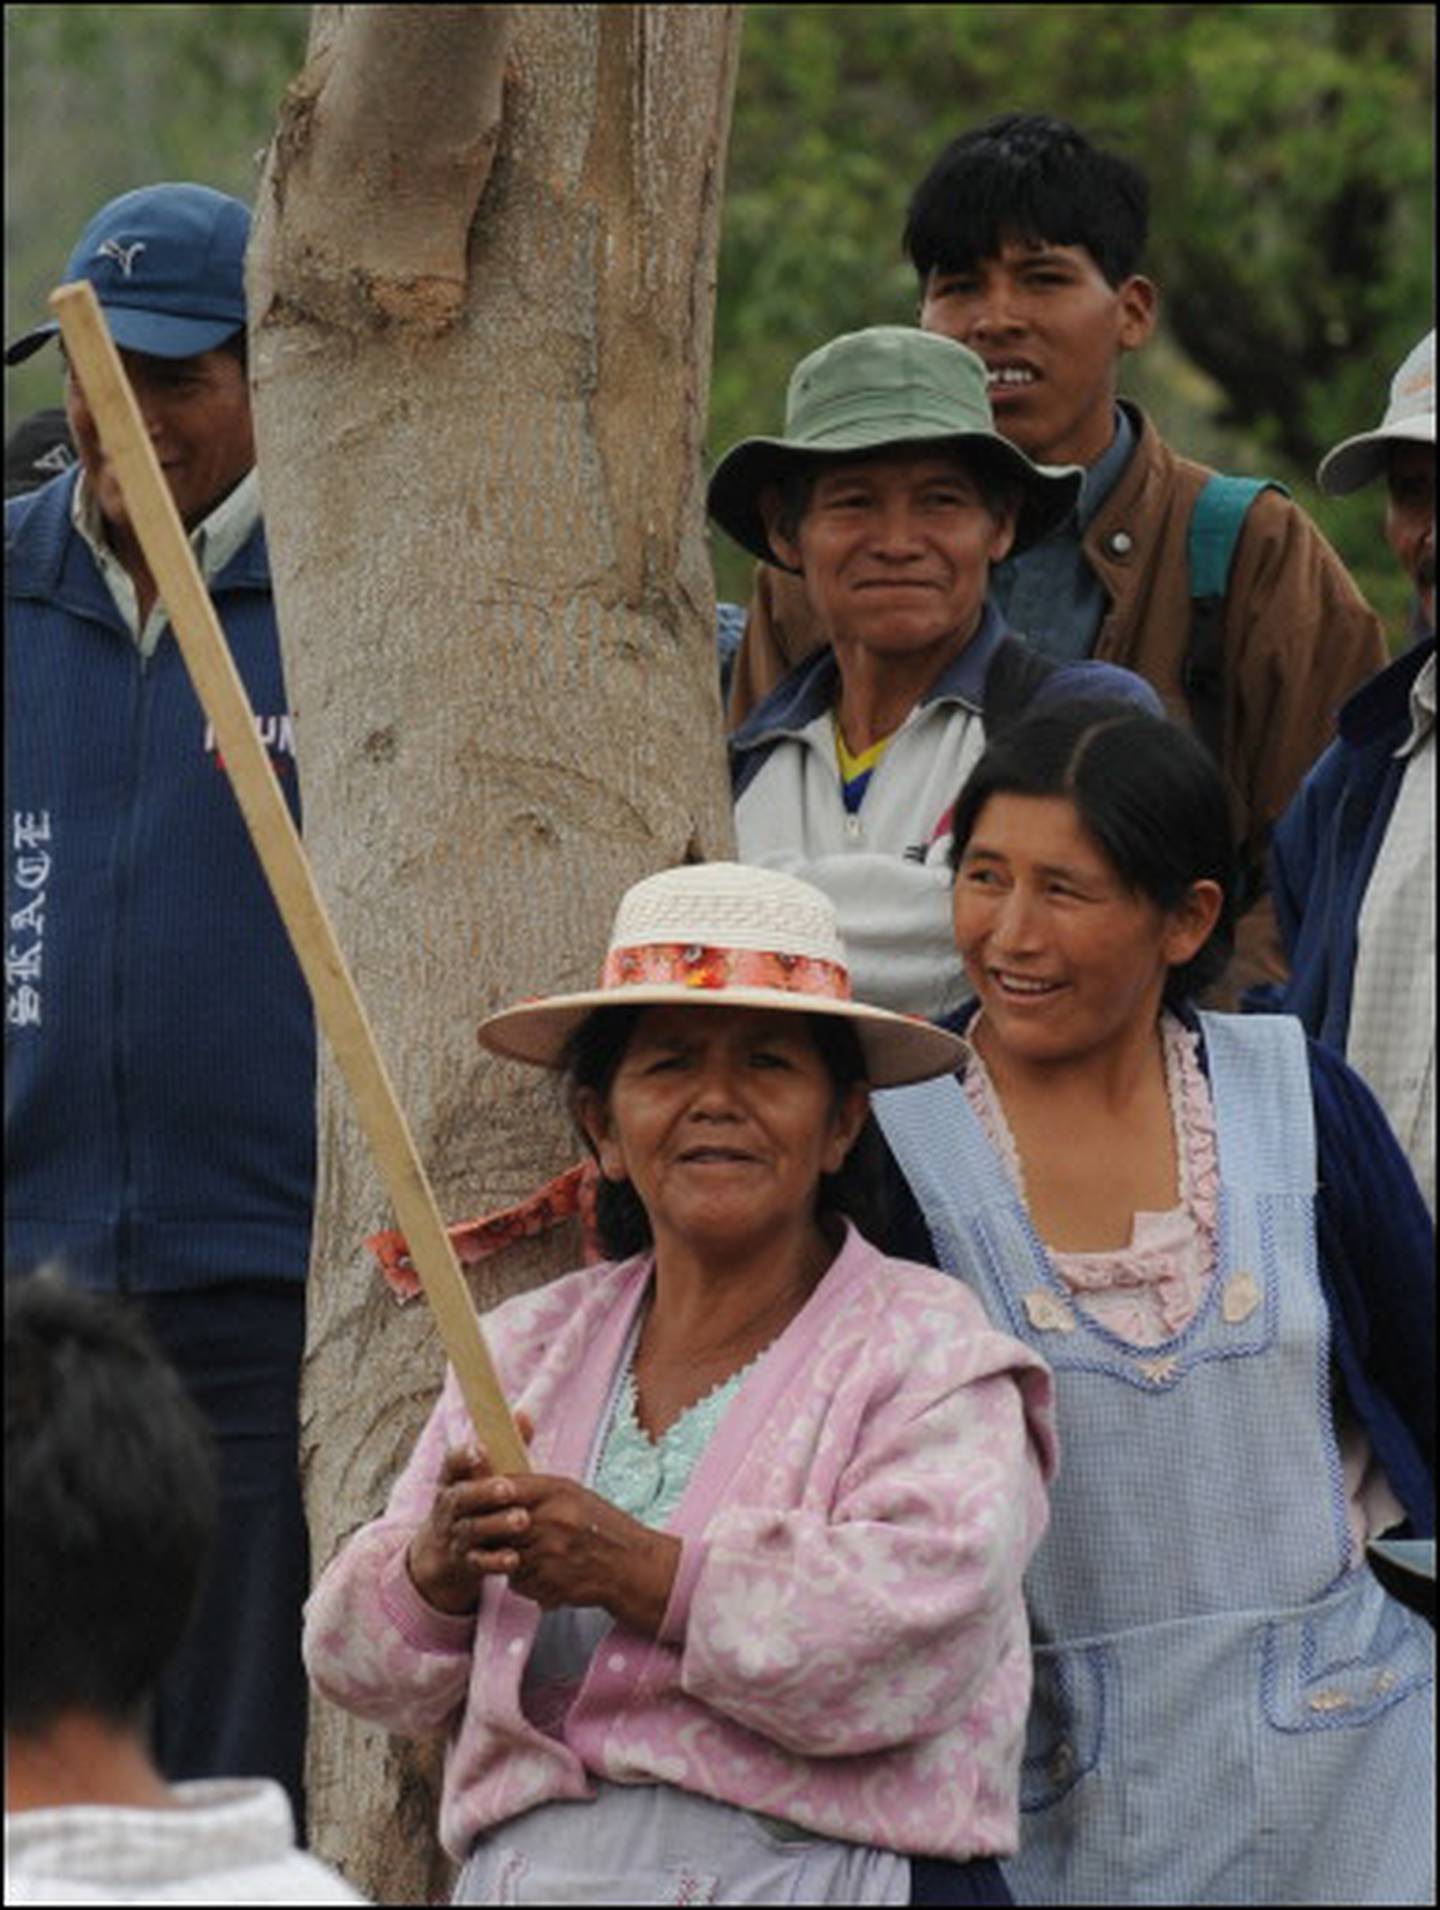 Campesinos bolivianos postergan marcha a Santa Cruz por negociaciones La Nación